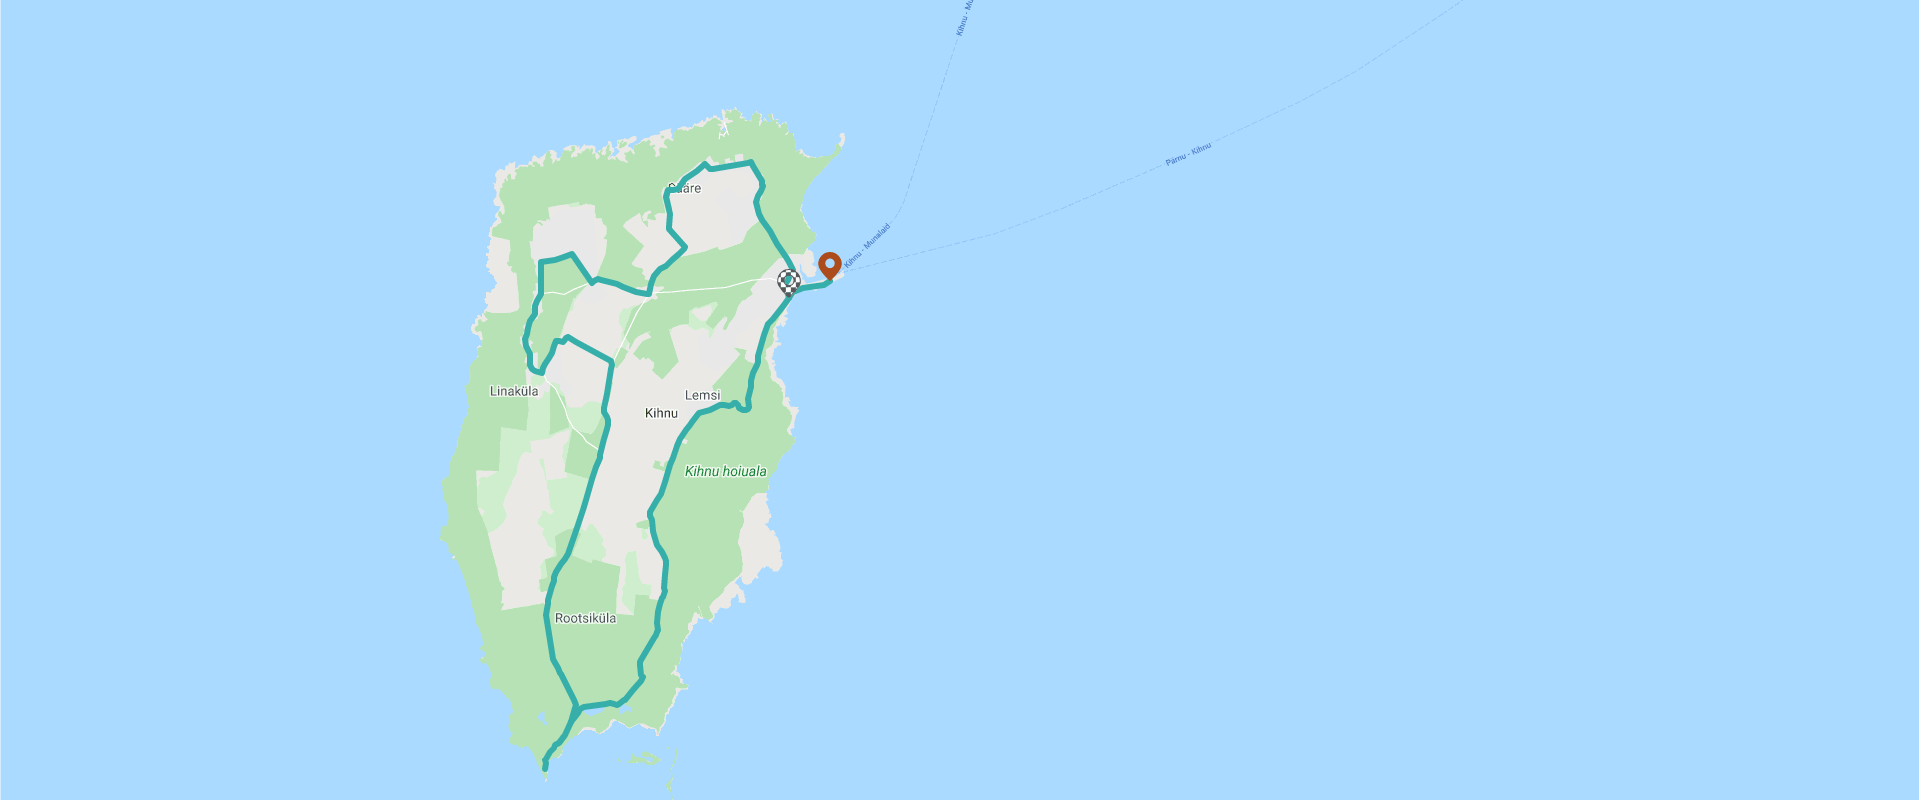 Klick auf der Karte um die Route zu sehen